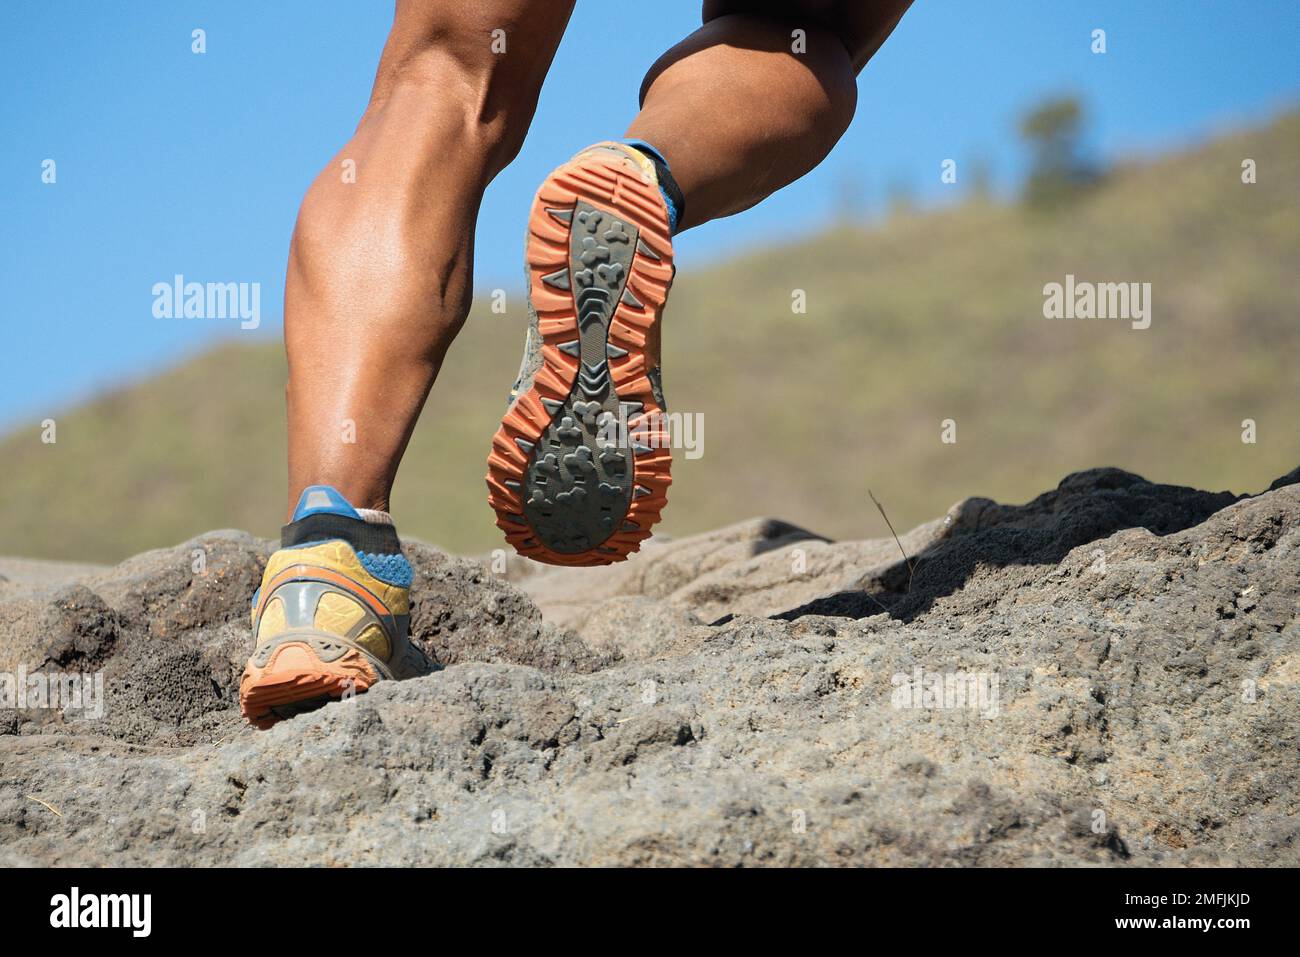 Un hombre runner de trail. y pies de atleta con calzado deportivo